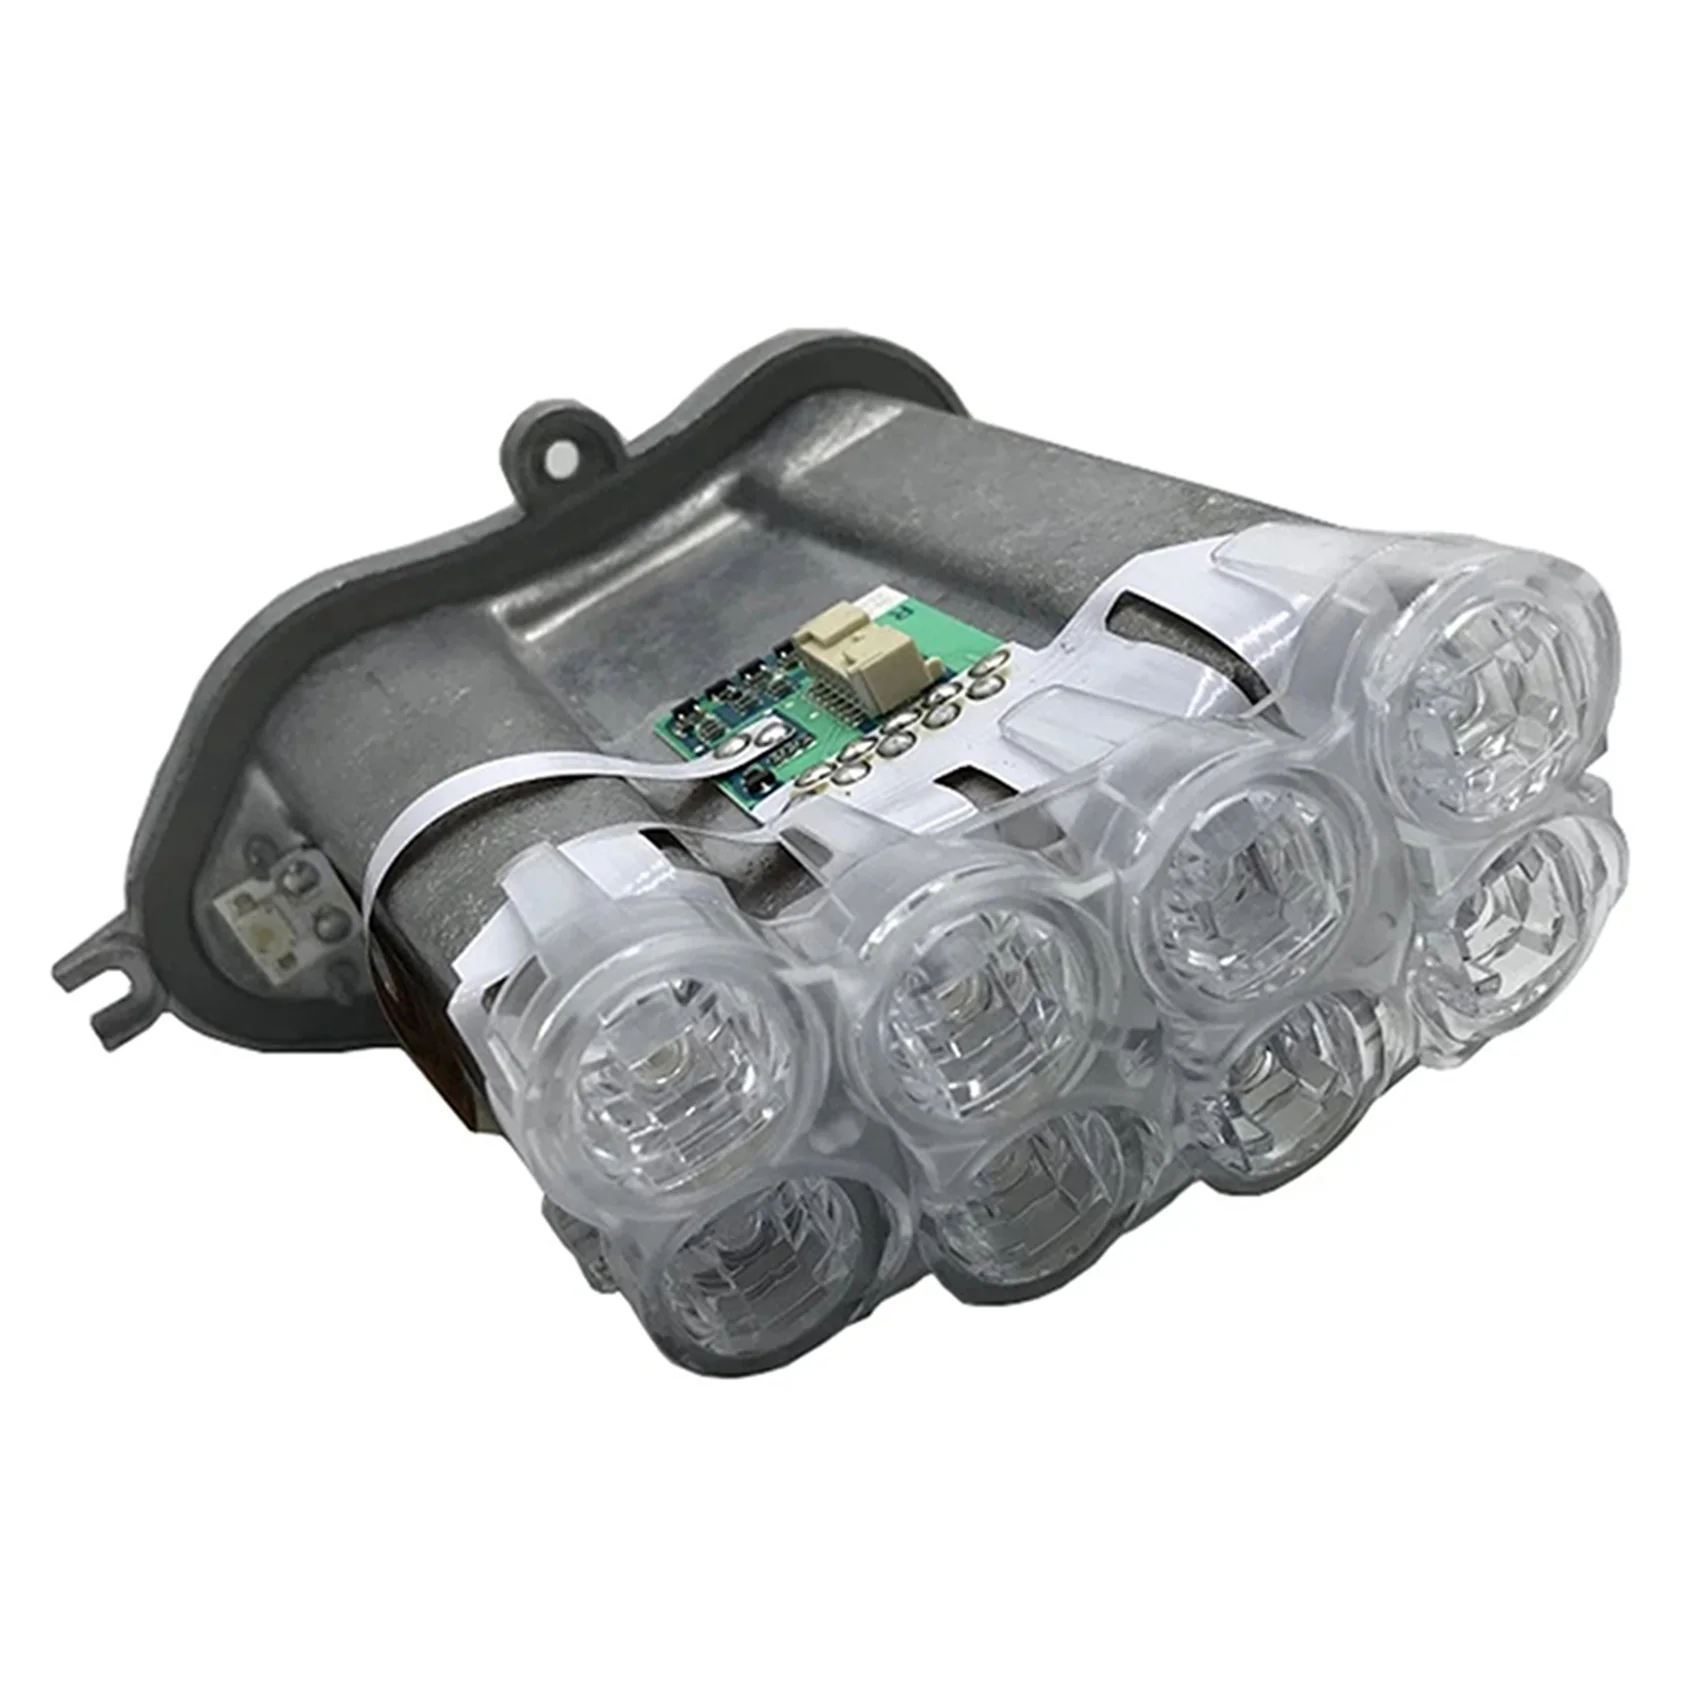 

Car Right LED Turn Signal Control Unit Module for-BMW 7 Series F01 F02 F03 F04 63117225232